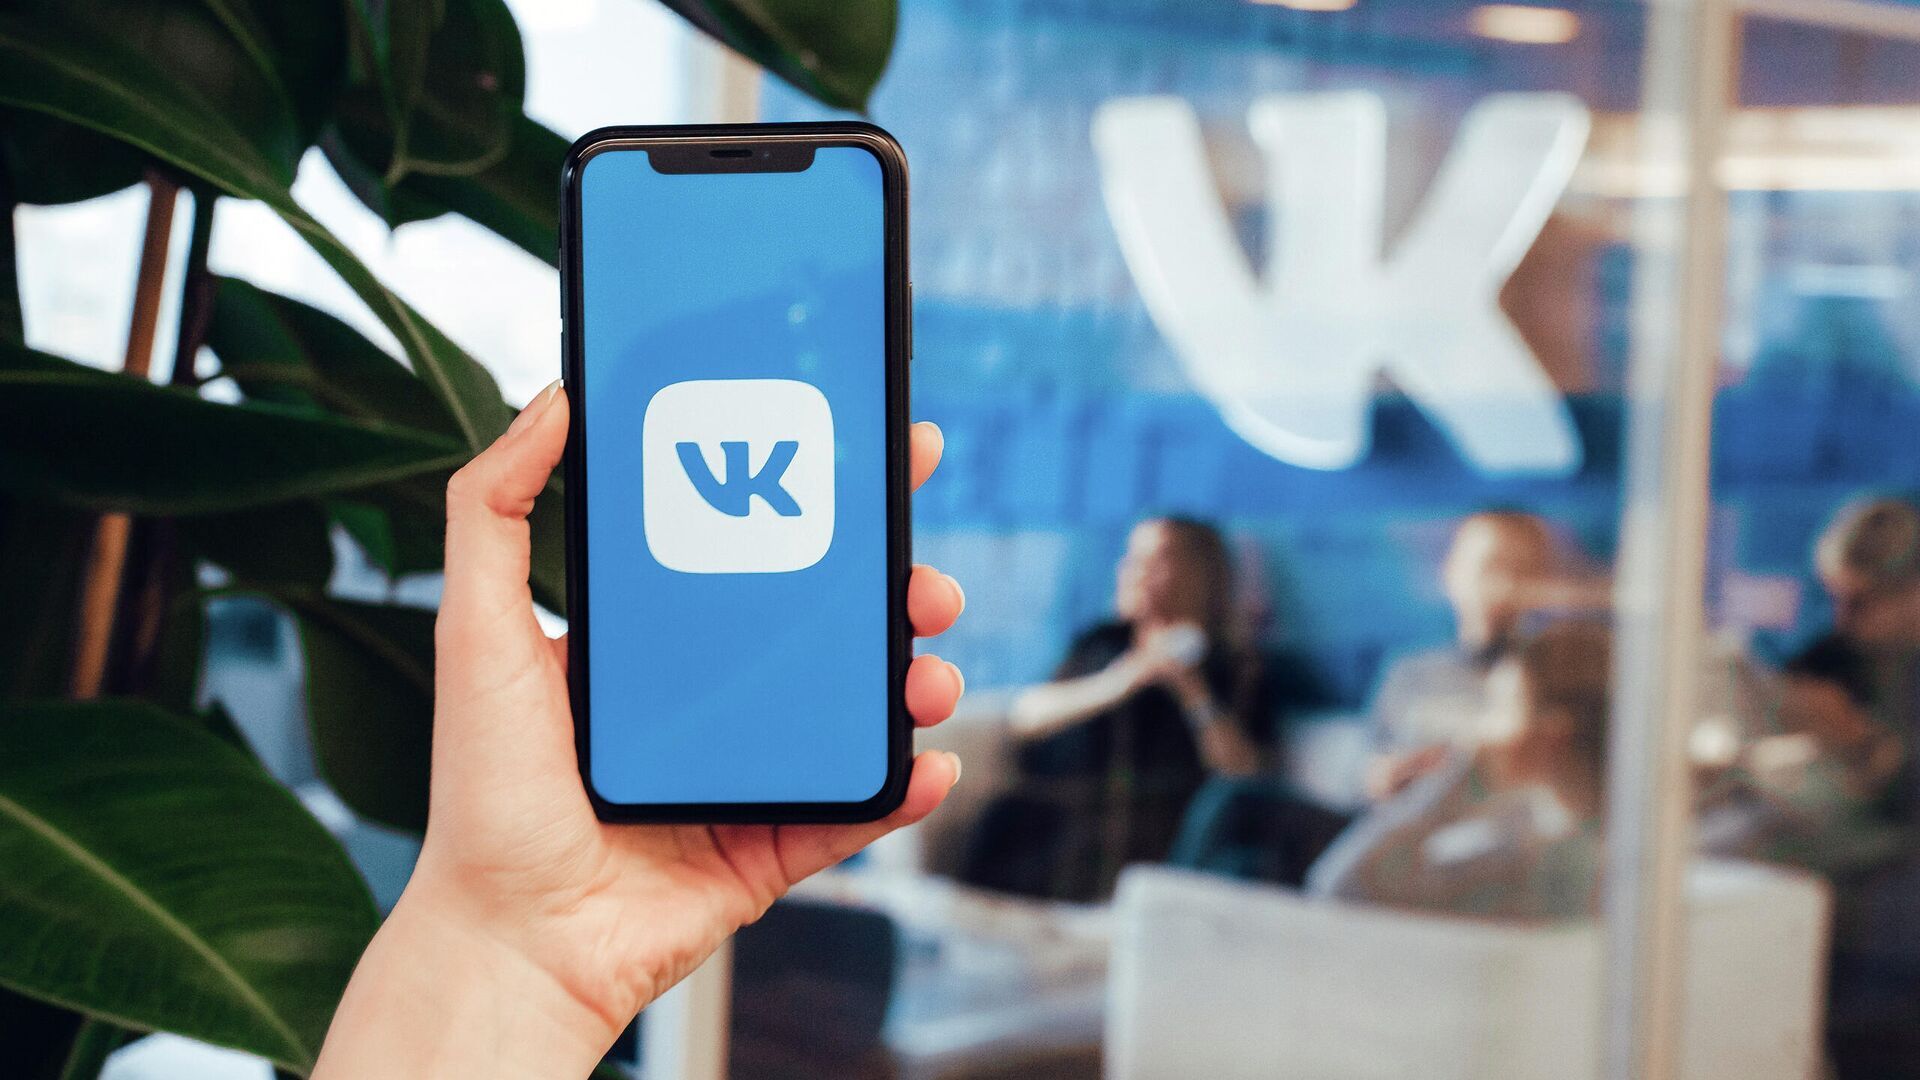 VK запустила игровую платформу VK Play с магазином, стримингом и «облачным» сервисом